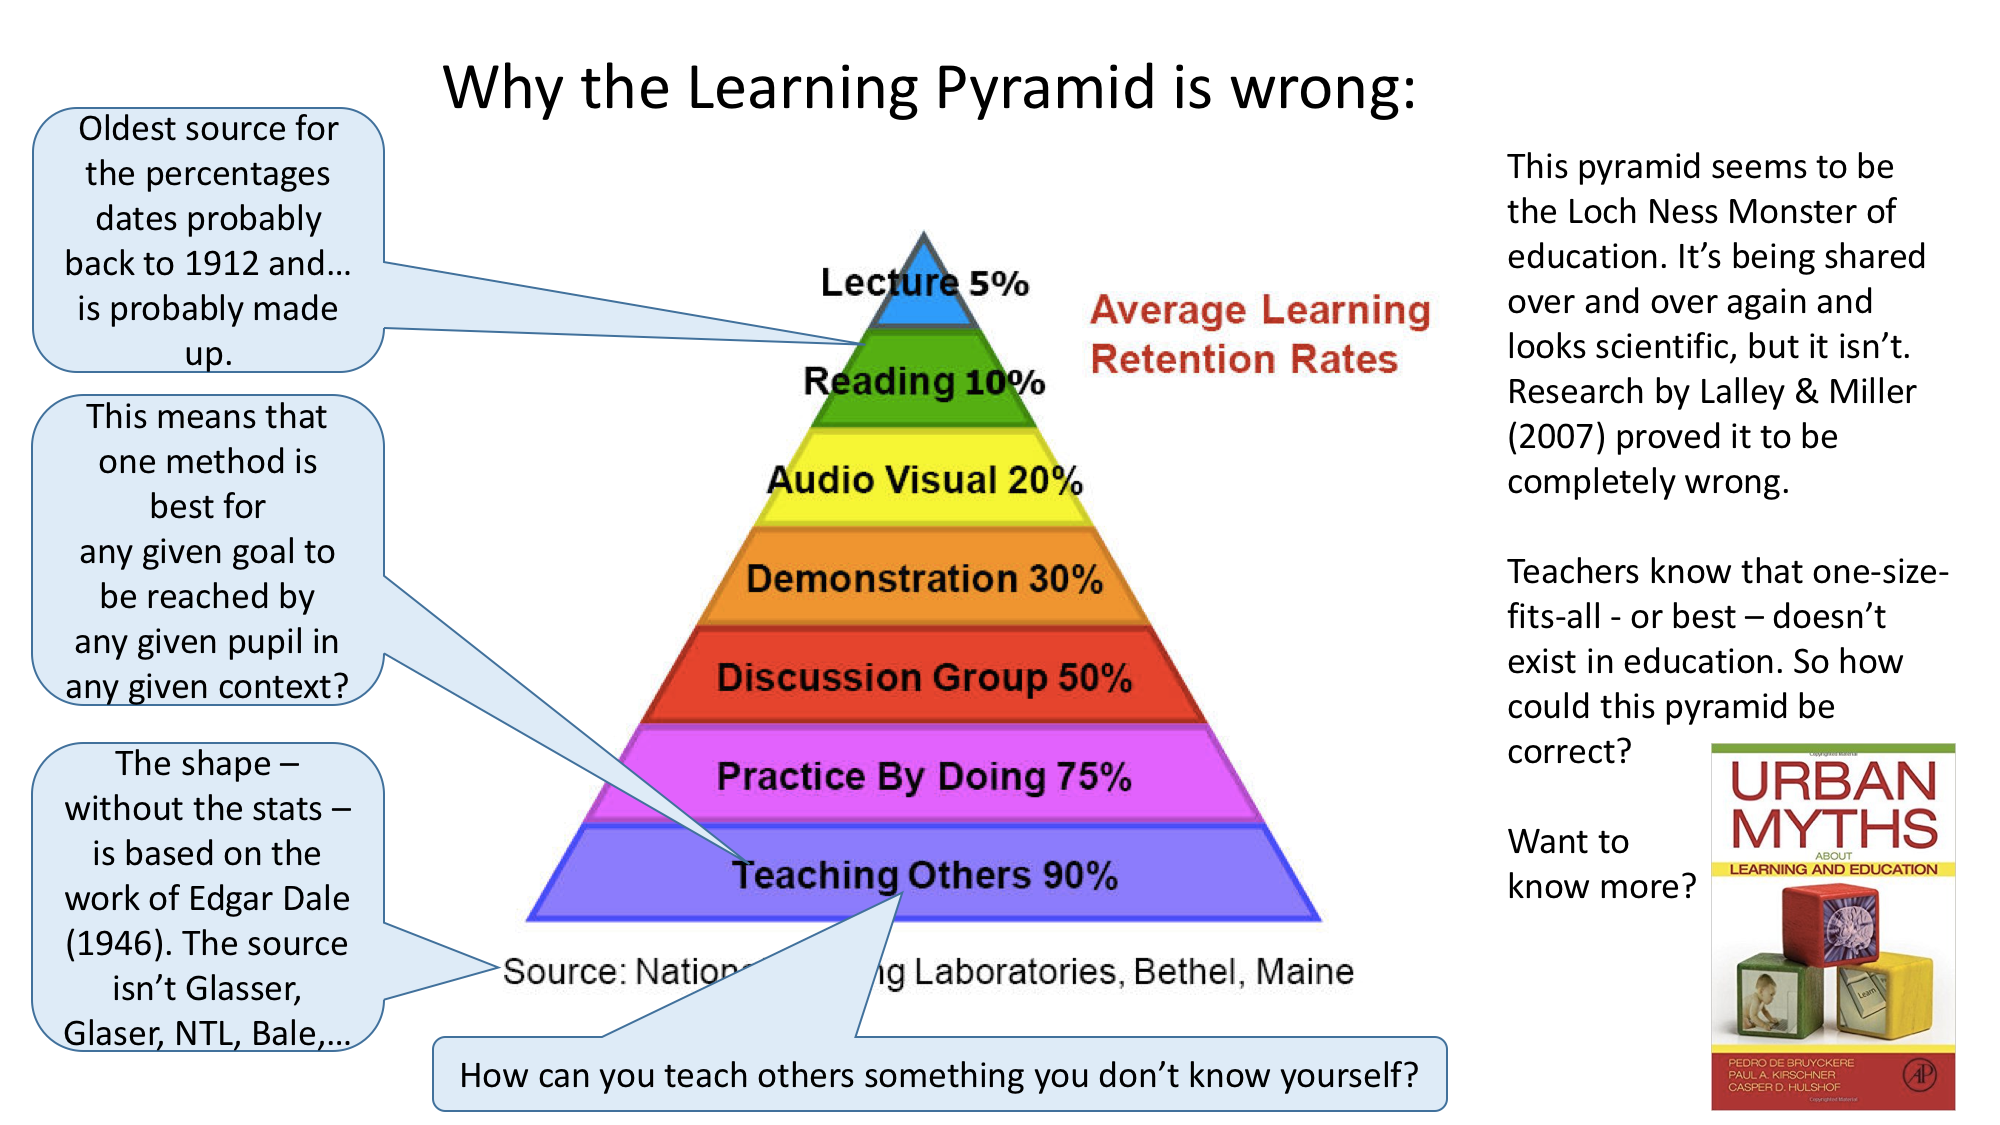 La Pyramide de l'apprentissage selon un laboratoire du Maine - Page 2 The-loch-ness-pyramid-of-education2